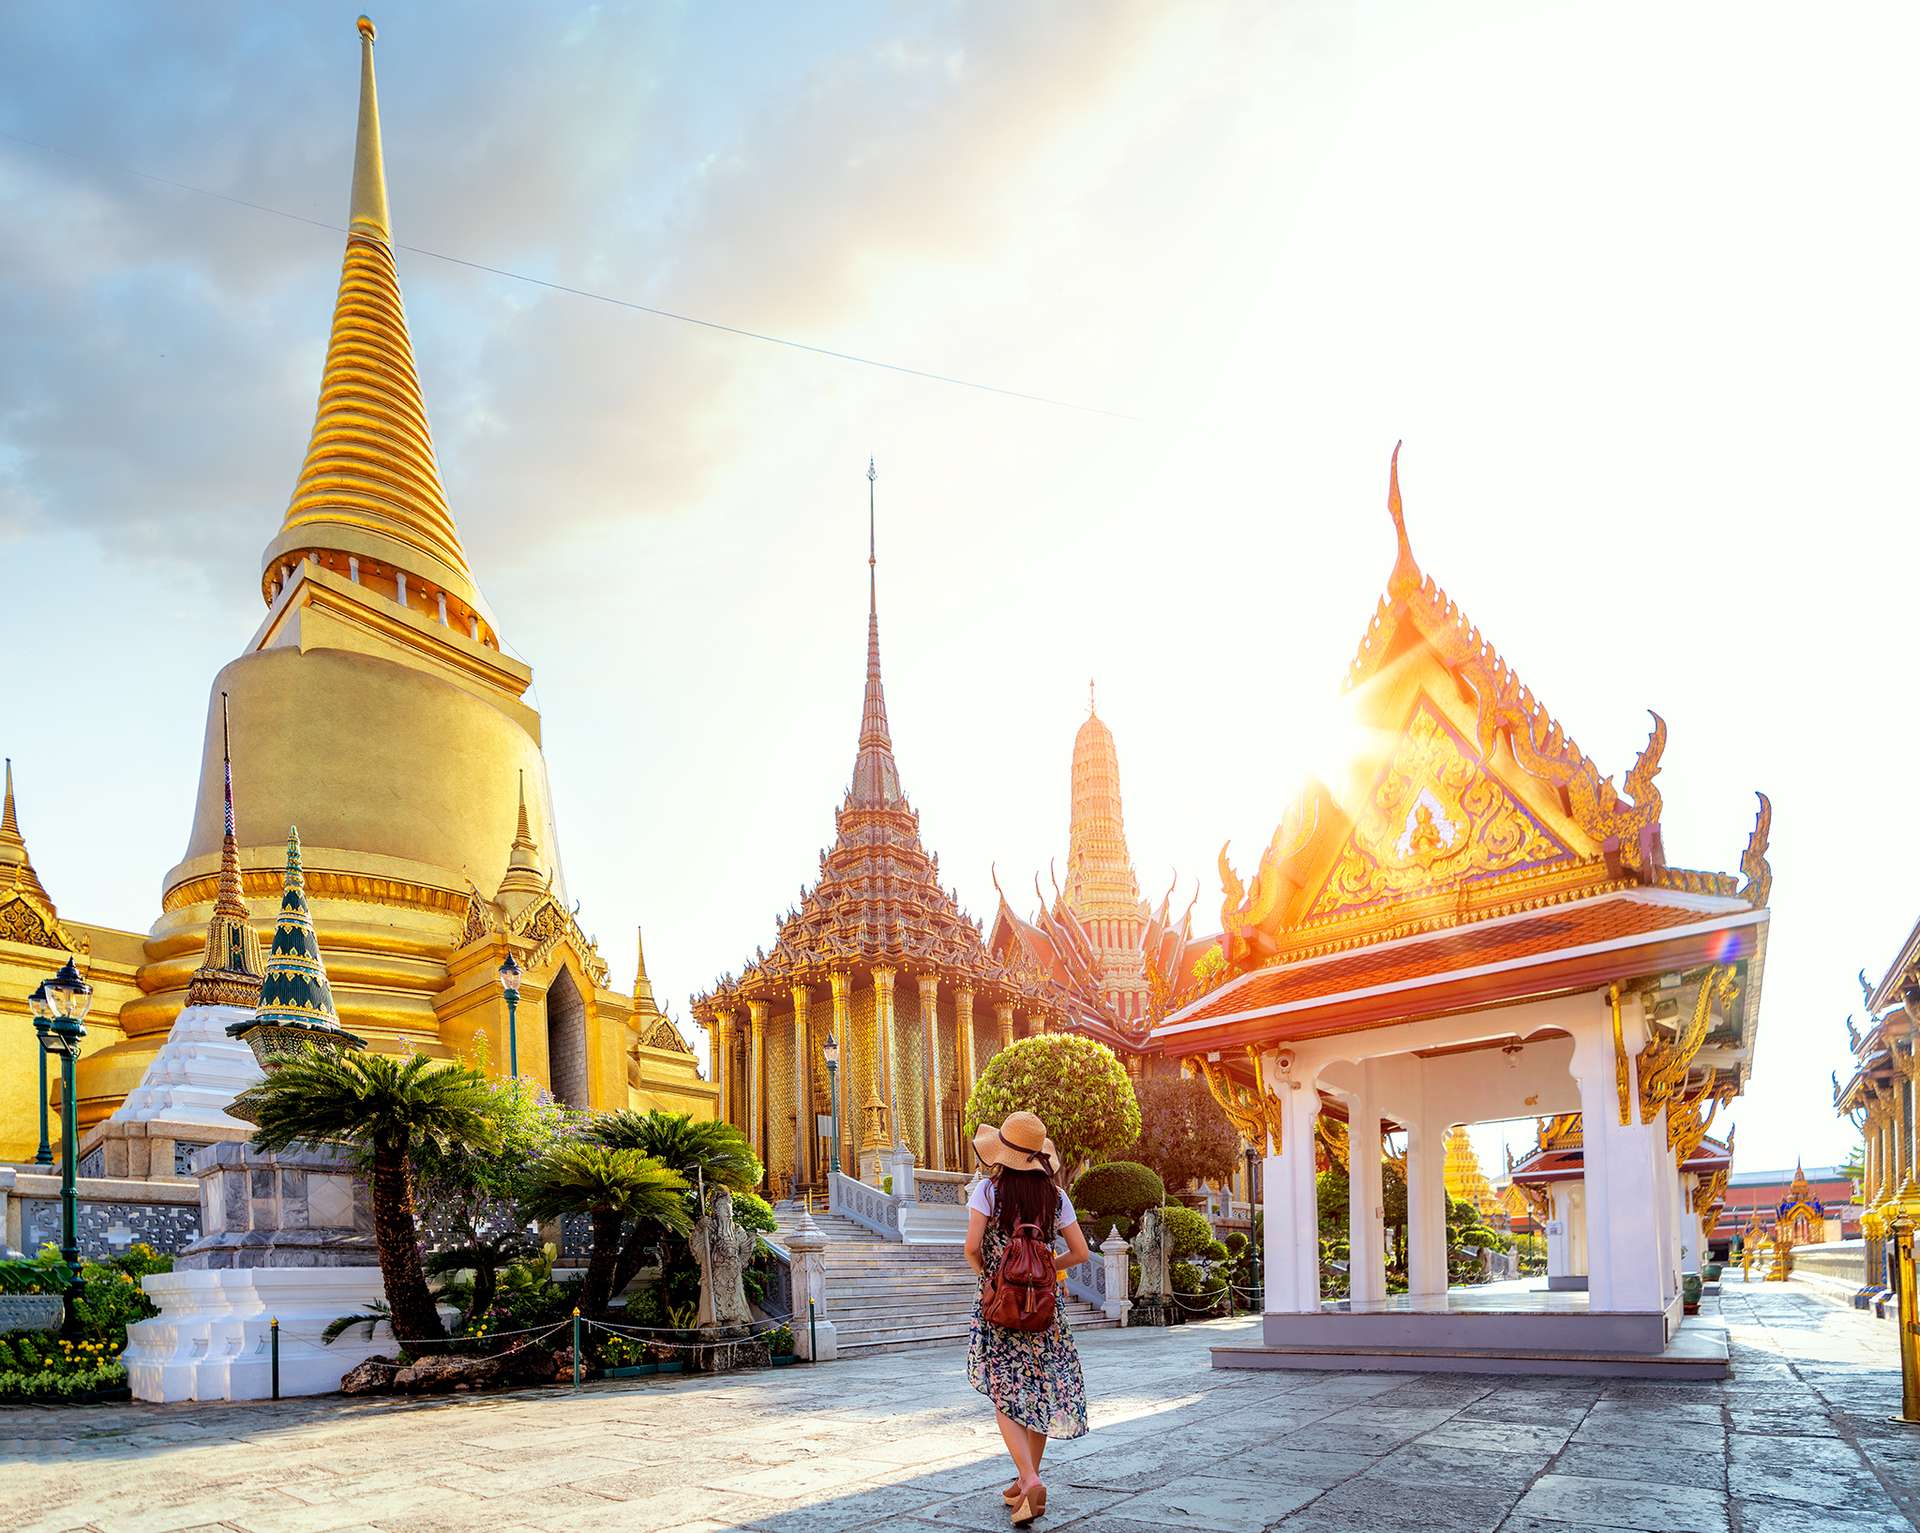 Chùa Phật Ngọc: Chùa Phật Ngọc được xem là một trong những ngôi chùa lớn và quan trọng nhất tại Việt Nam. Với kiến trúc độc đáo, bức tượng Phật Ngọc cao 1,1m, tuyệt phẩm kỹ thuật và nghệ thuật của Việt Nam, chùa này khiến cho người tôn giáo và du khách trầm trồ kính phục.